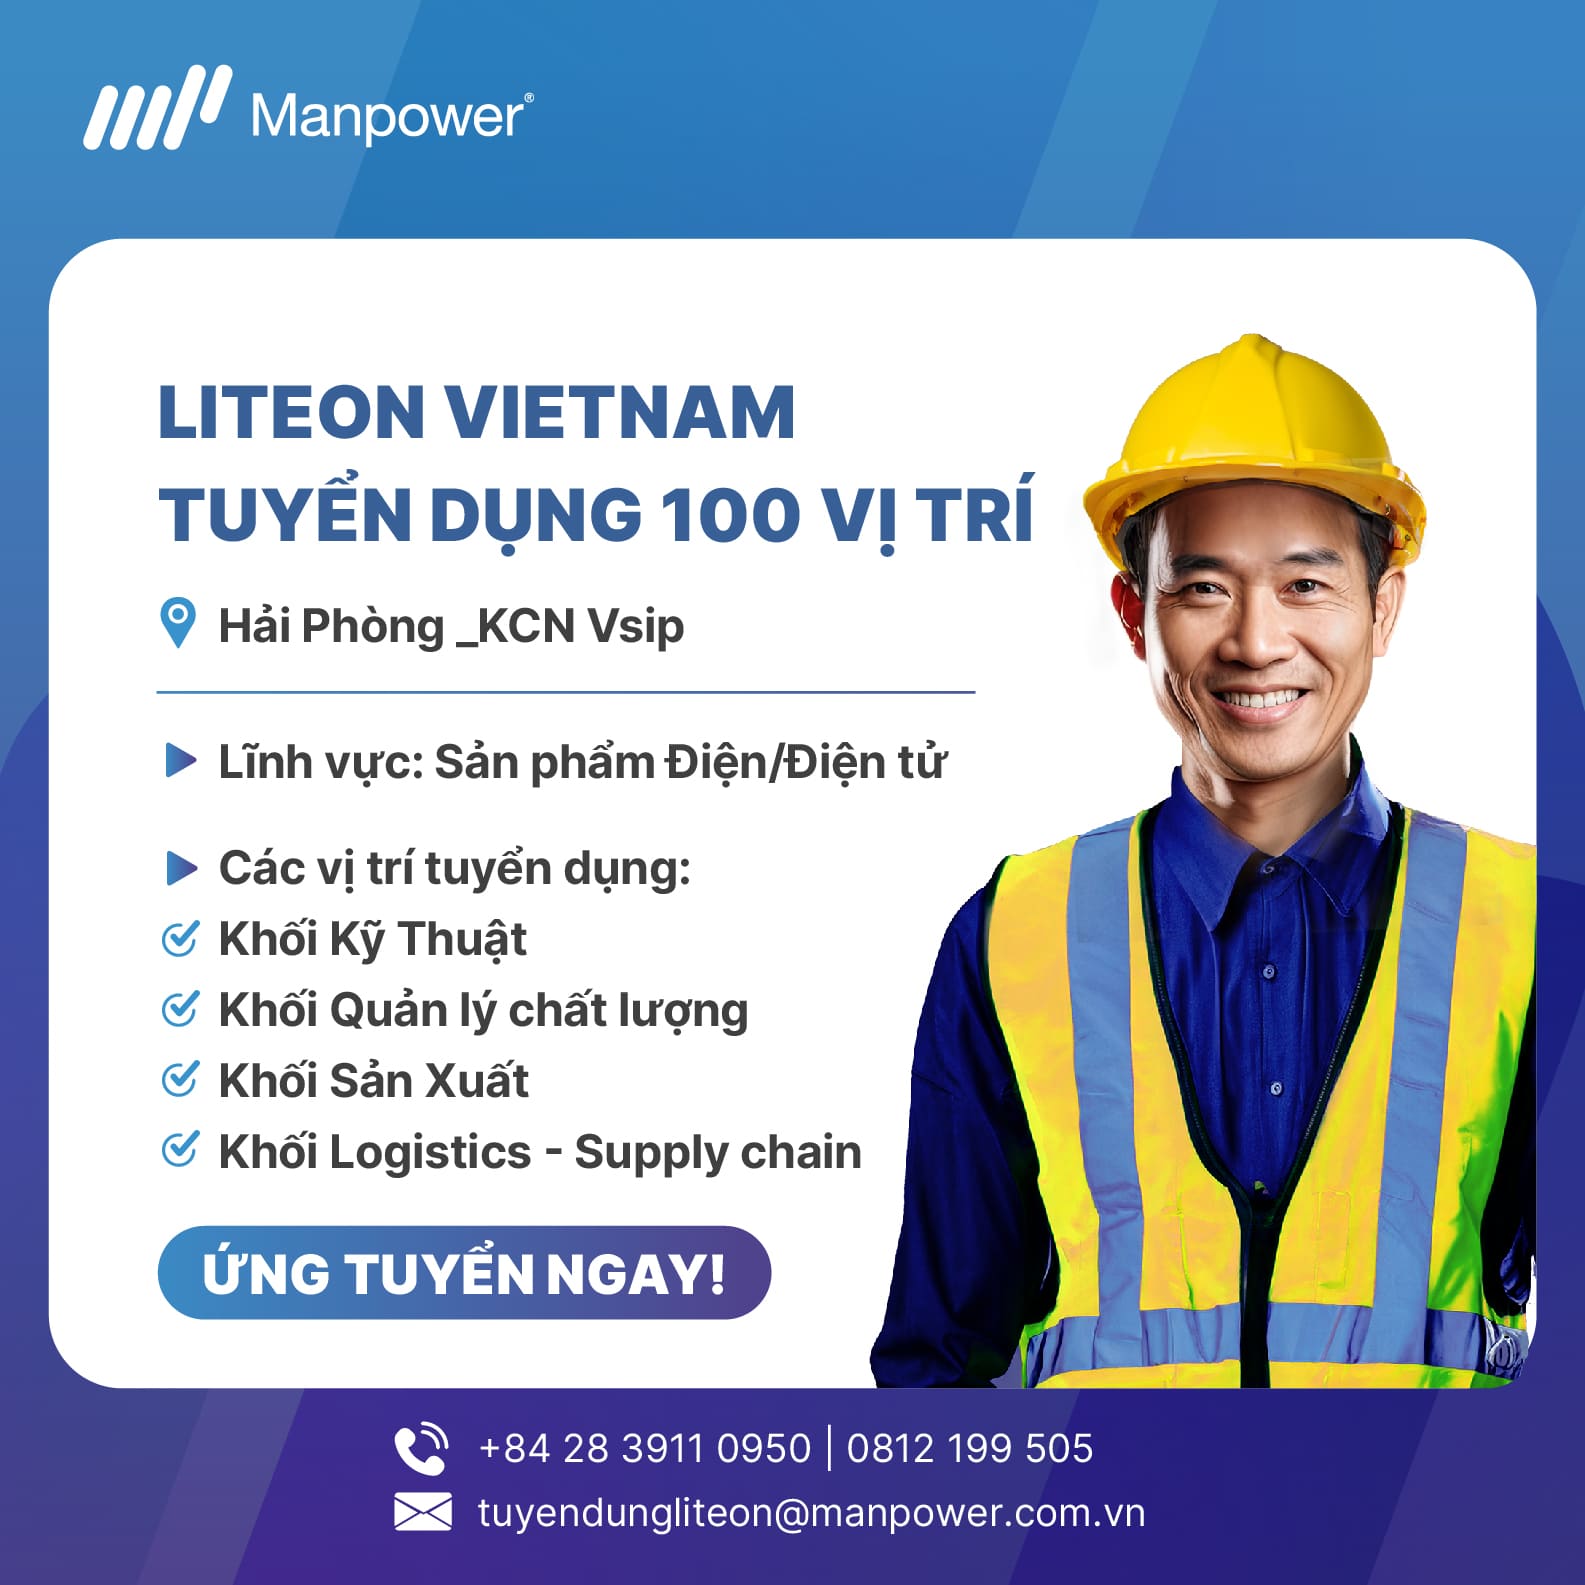 Job Opportunities at LITEON Vietnam